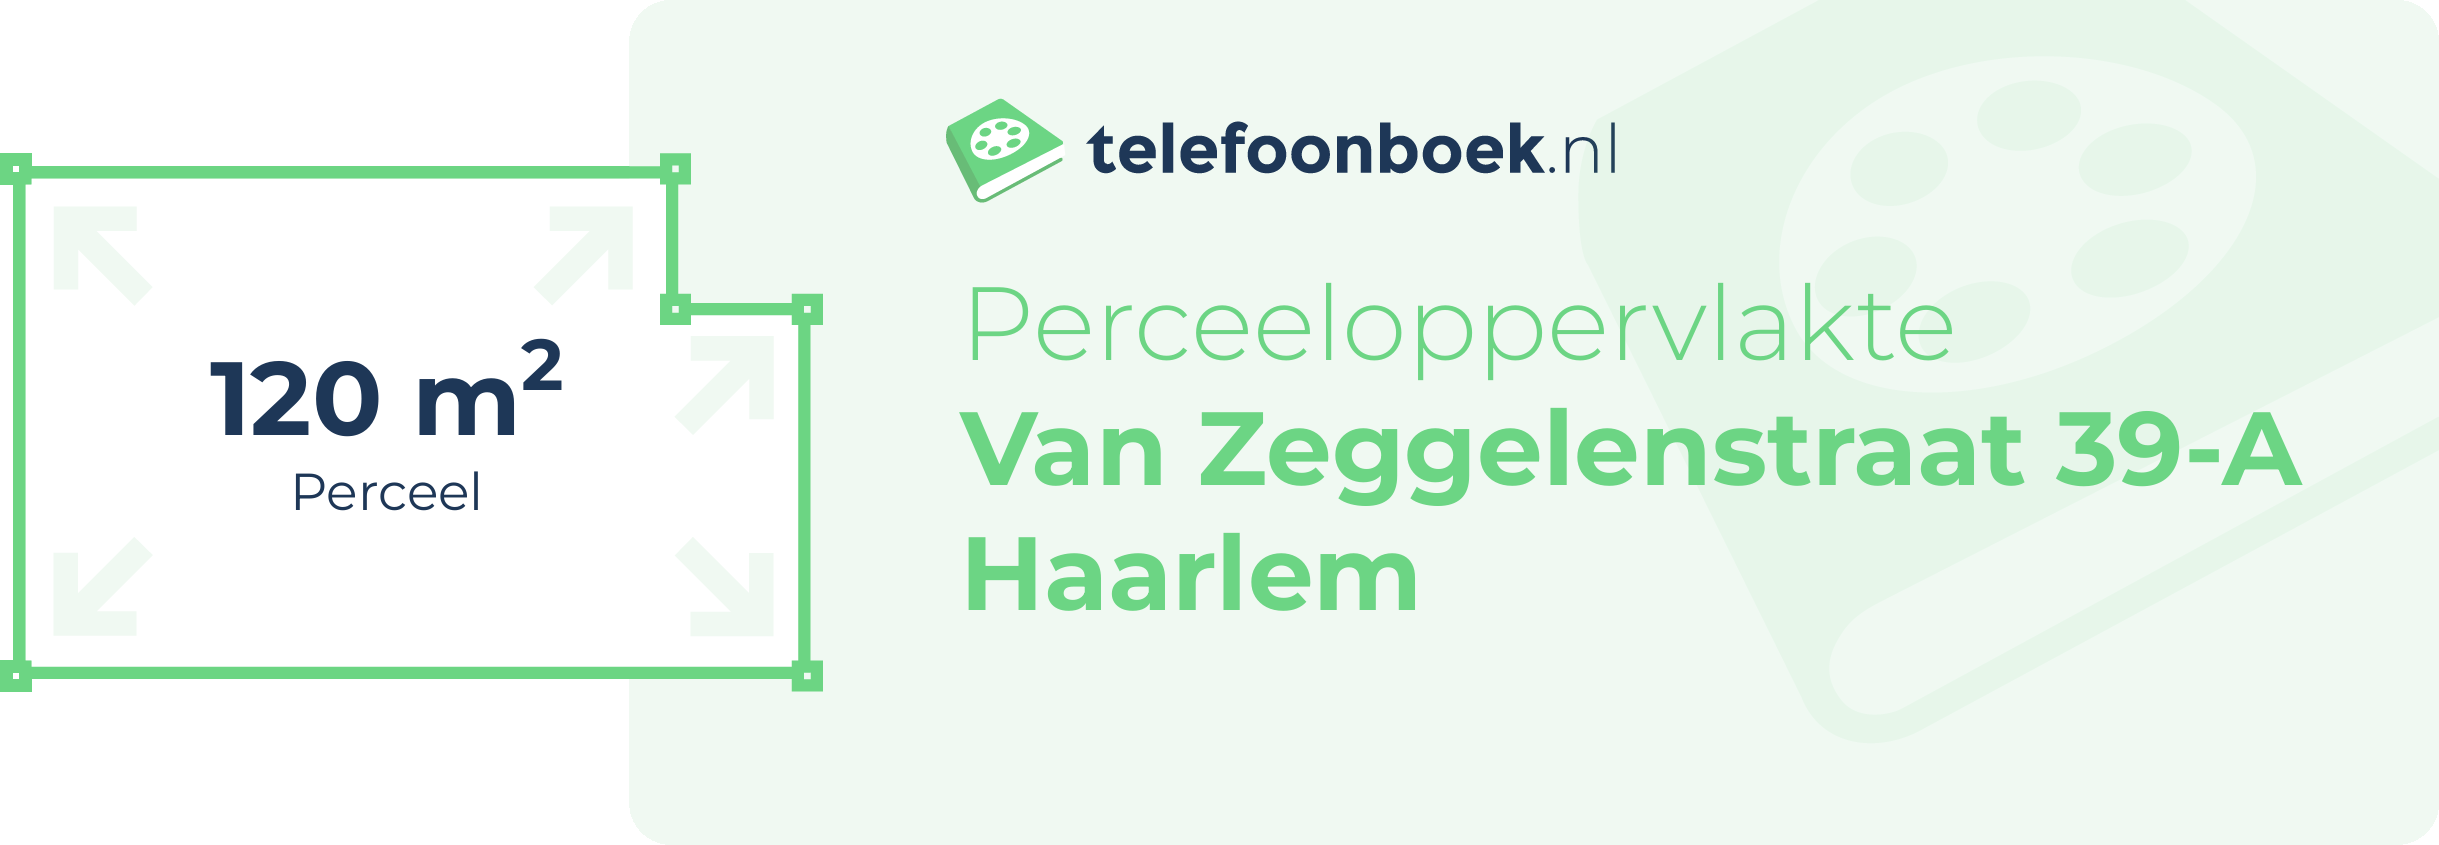 Perceeloppervlakte Van Zeggelenstraat 39-A Haarlem